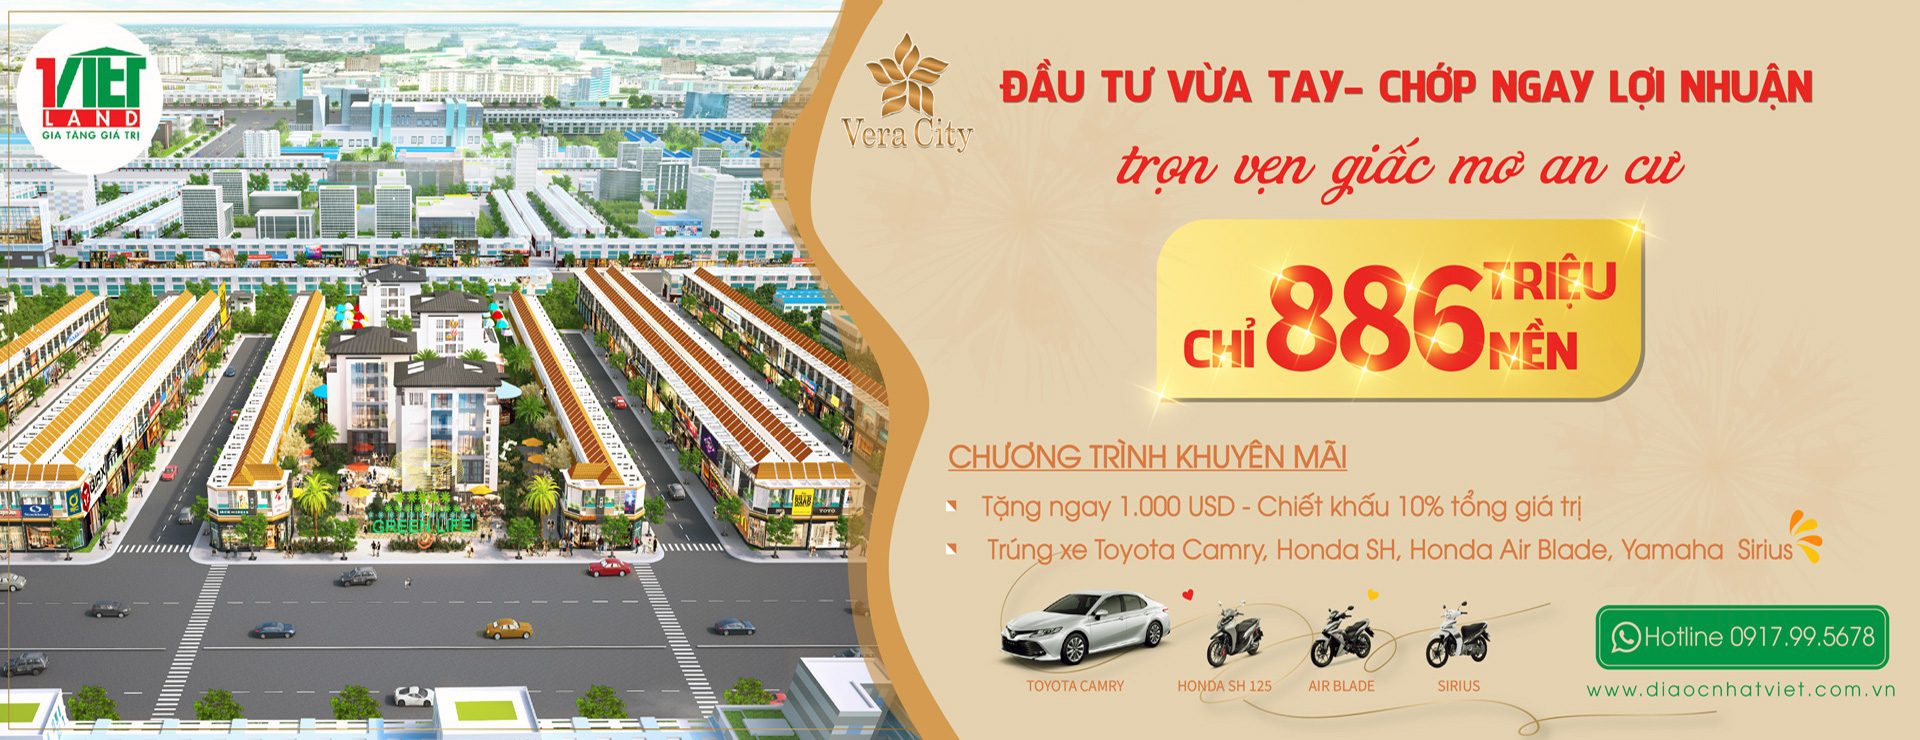 Dự án Vera City Đồng Xoài